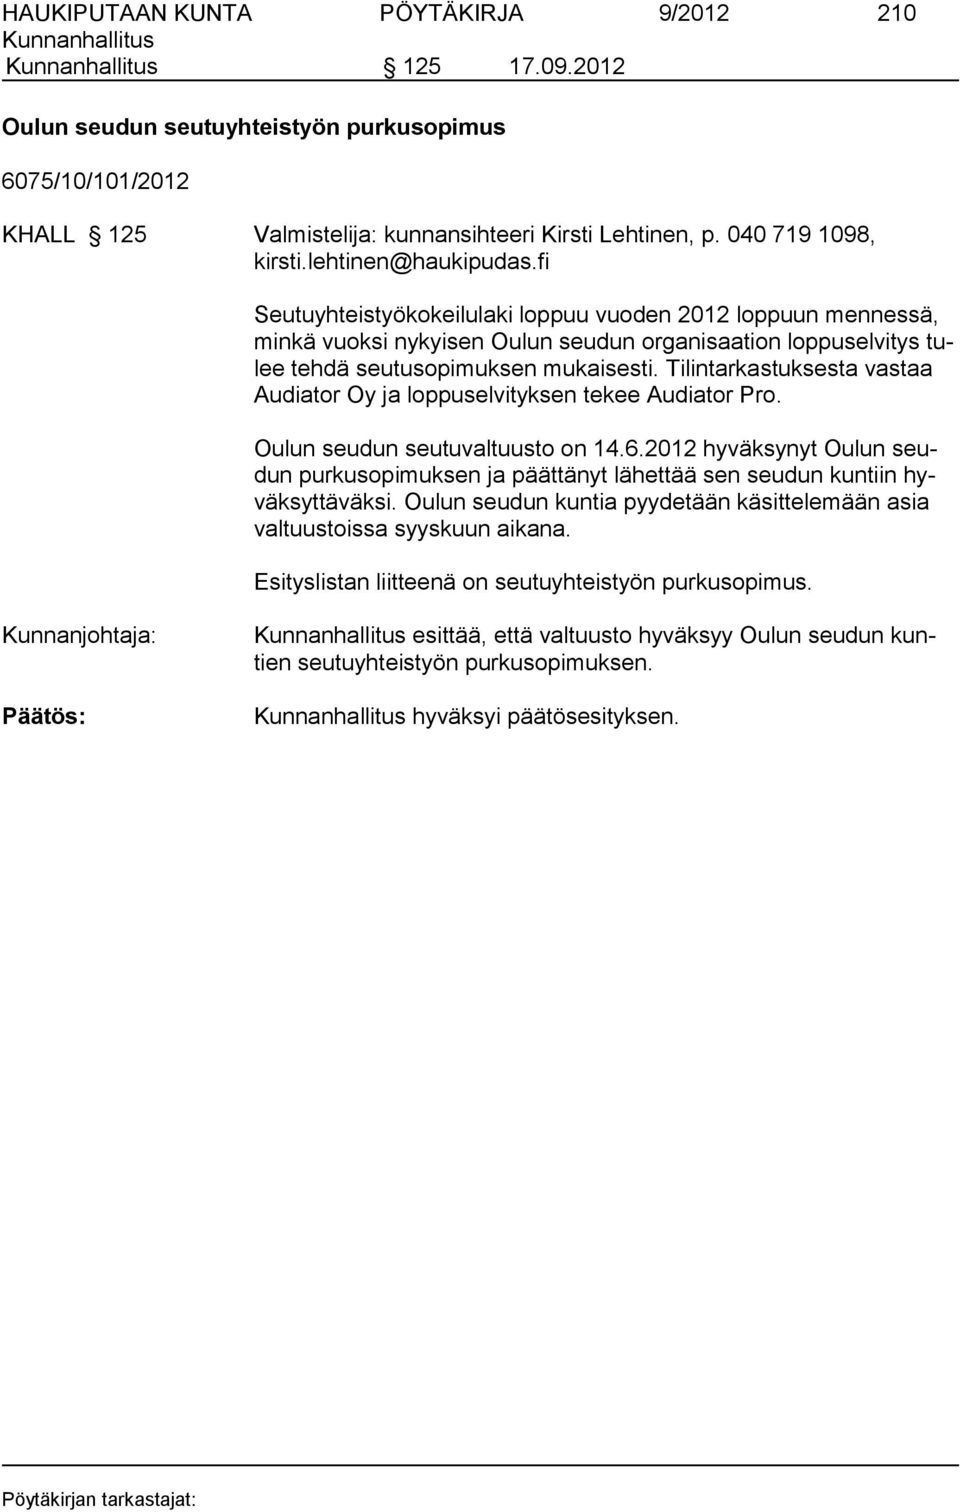 Tilintarkastuksesta vastaa Au diator Oy ja loppuselvityksen tekee Audiator Pro. Oulun seudun seutuvaltuusto on 14.6.